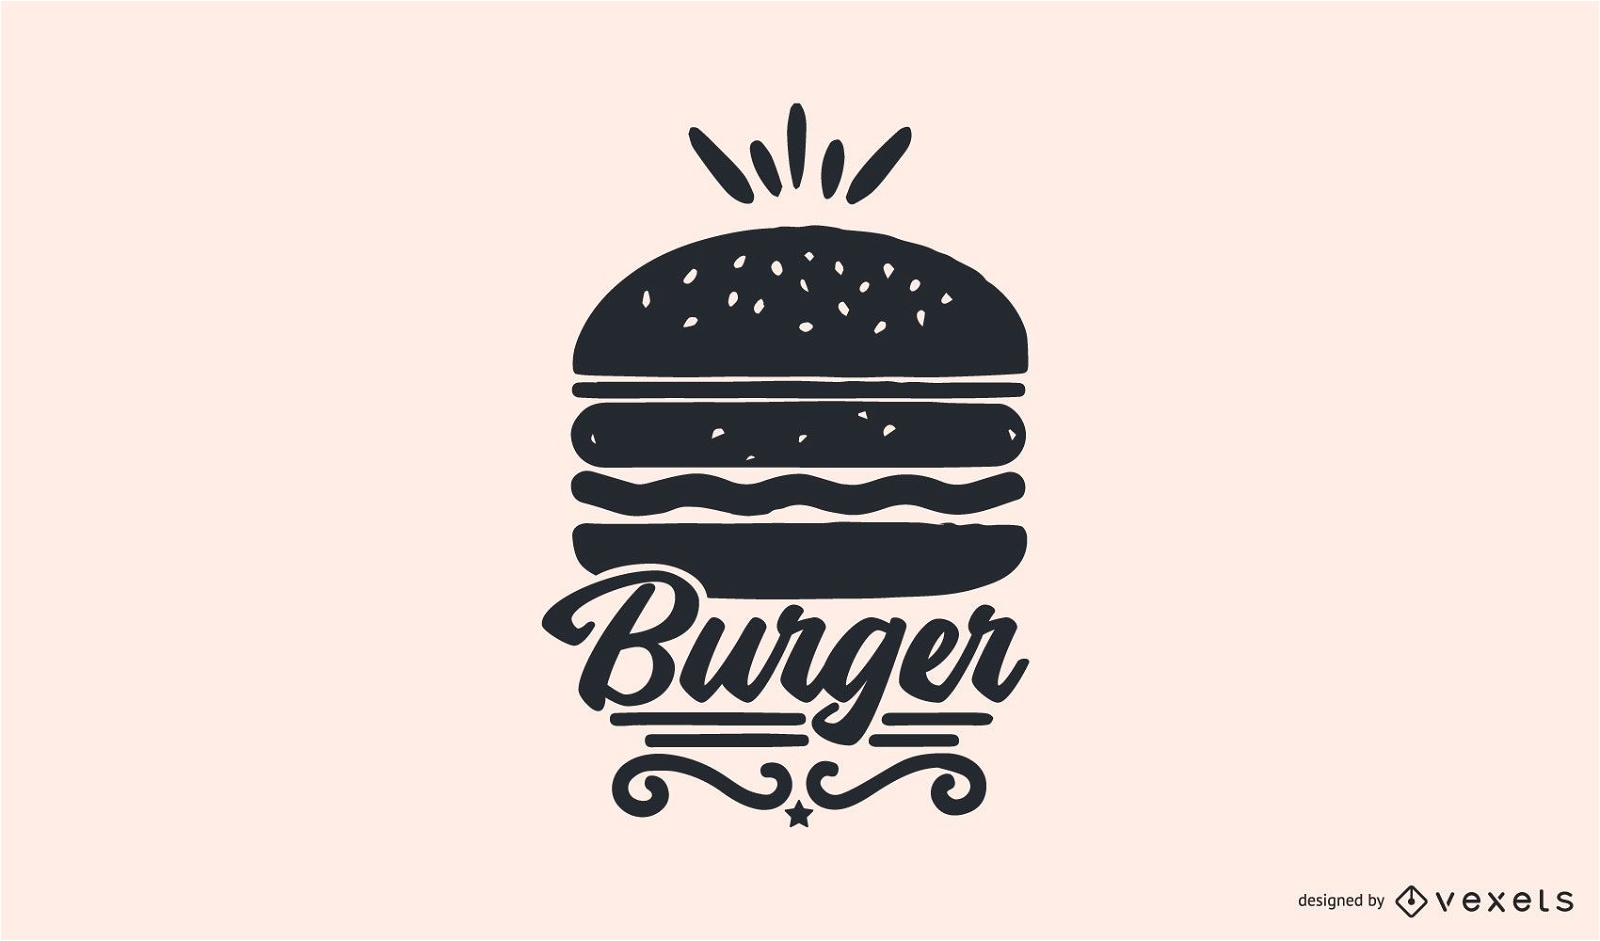 Elevation Burger Logo PNG Transparent & SVG Vector - Freebie Supply